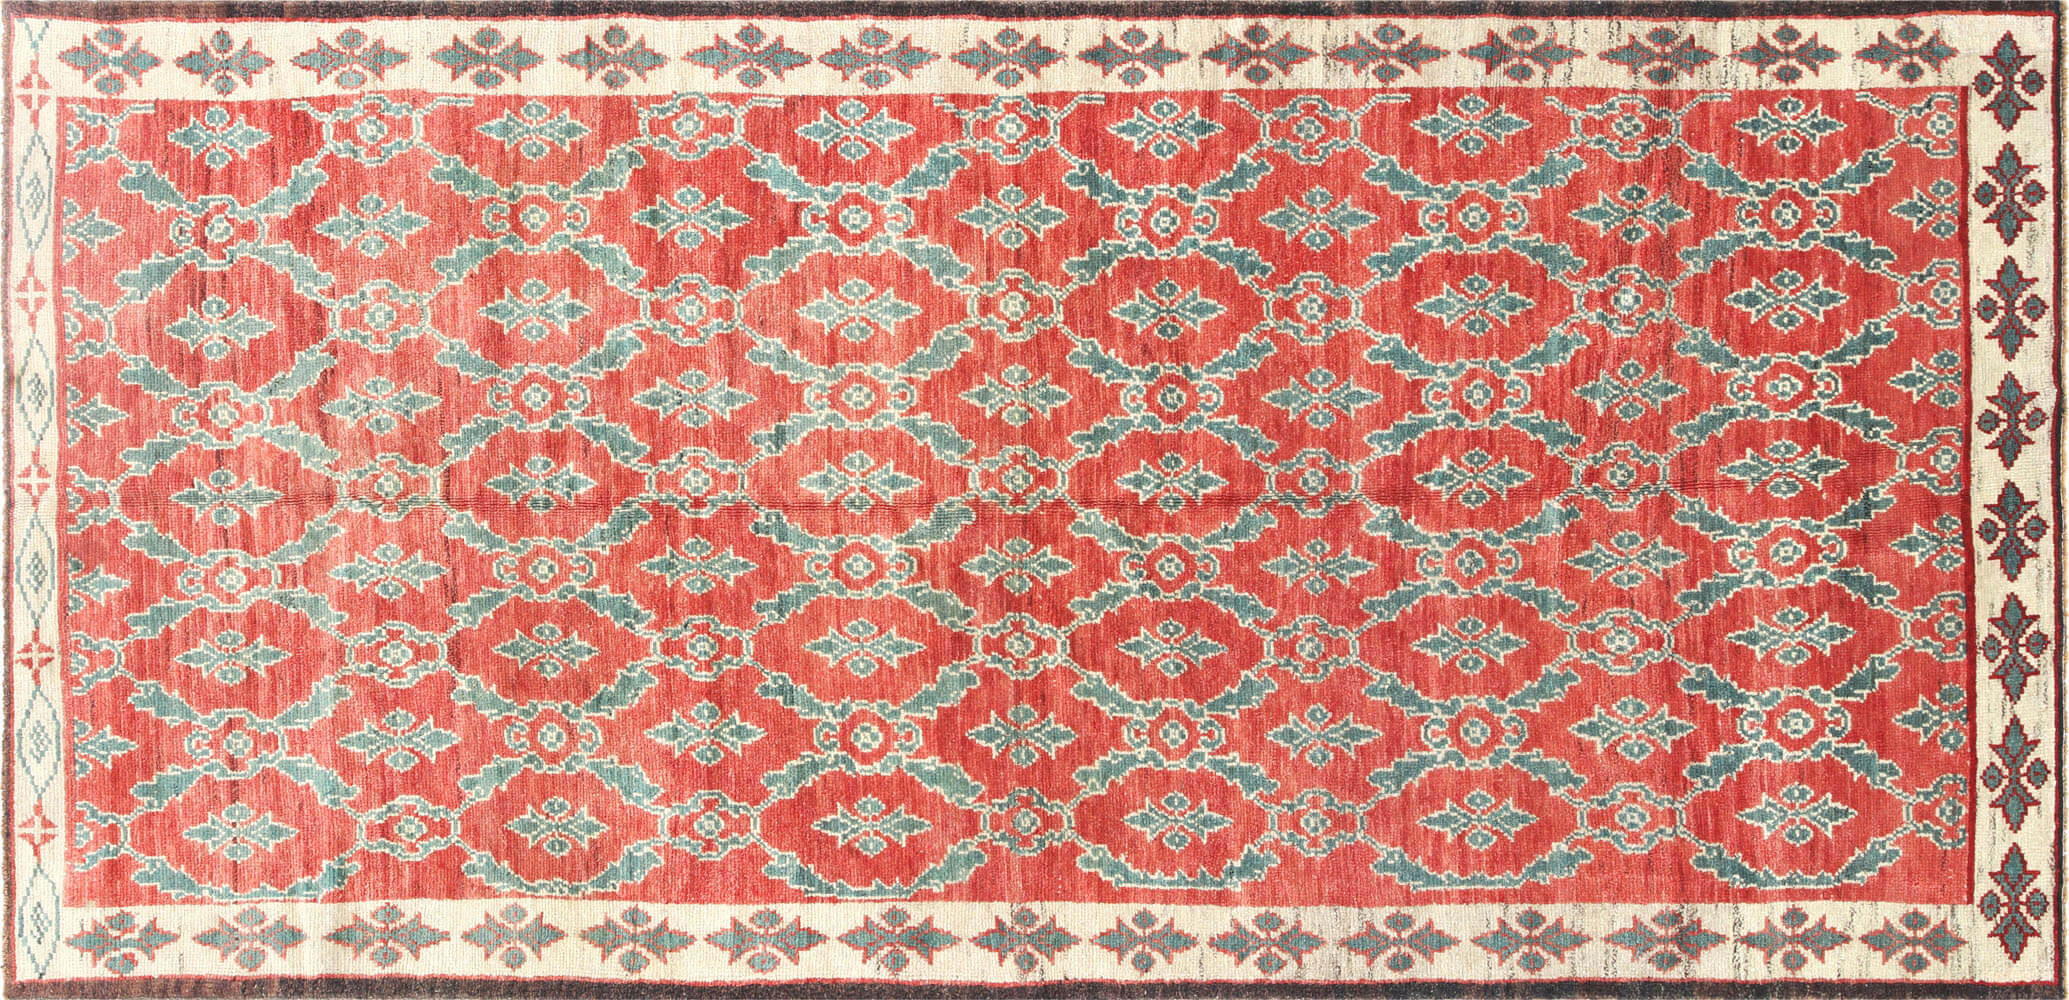 Vintage Turkish Oushak Carpet - 5'1" x 10'4"